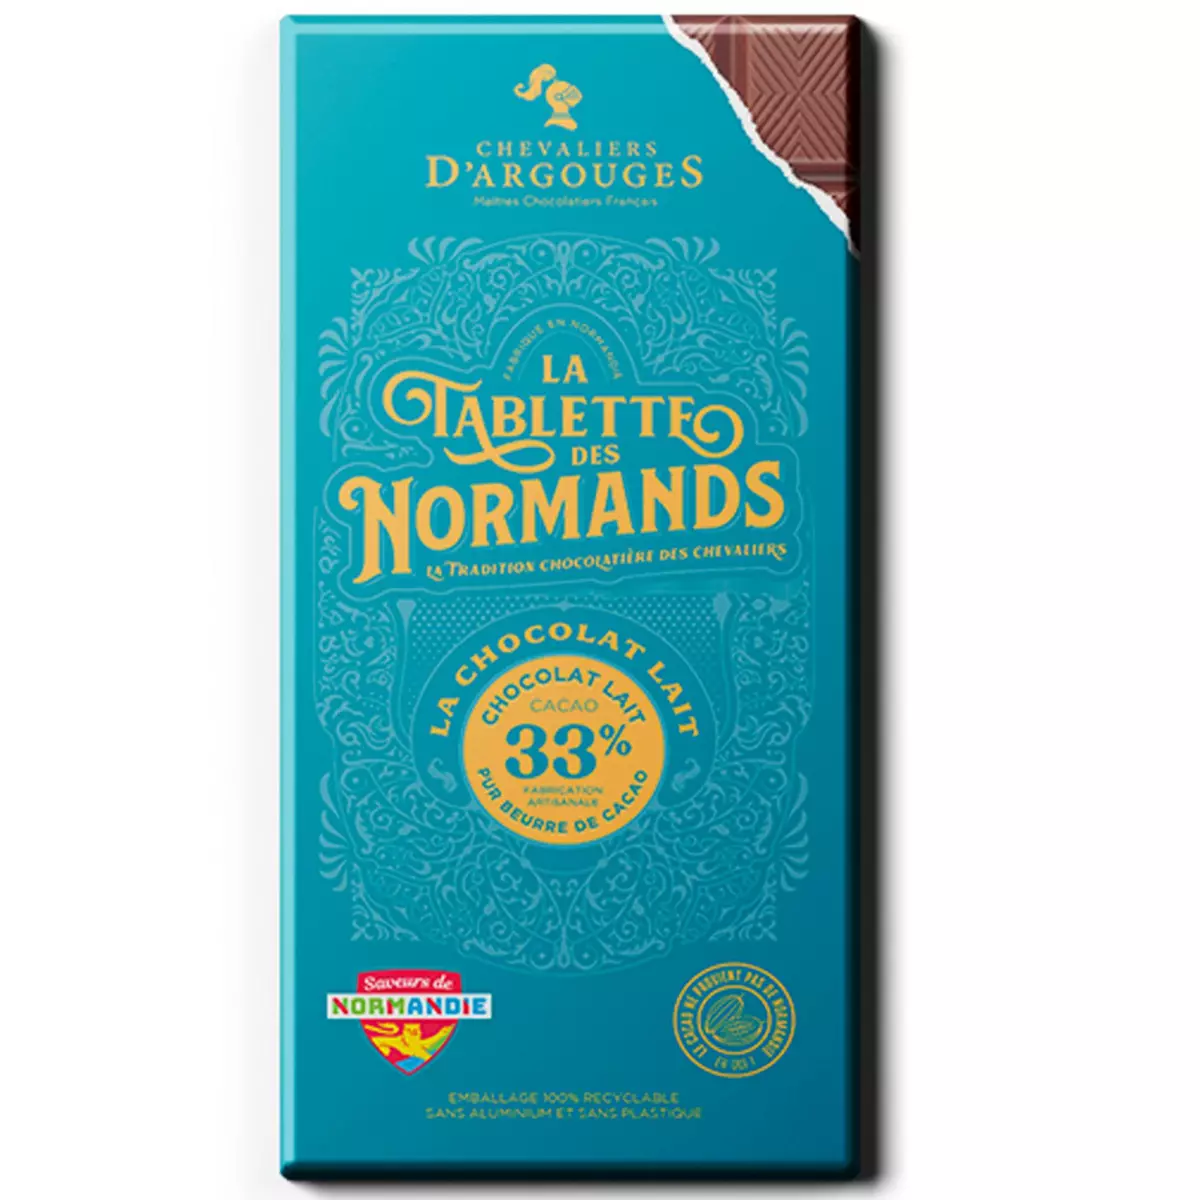 CHEVALIERS D'ARGOUGES Tablette des Normands au chocolat au lait cacao 33% 1 pièce 100g